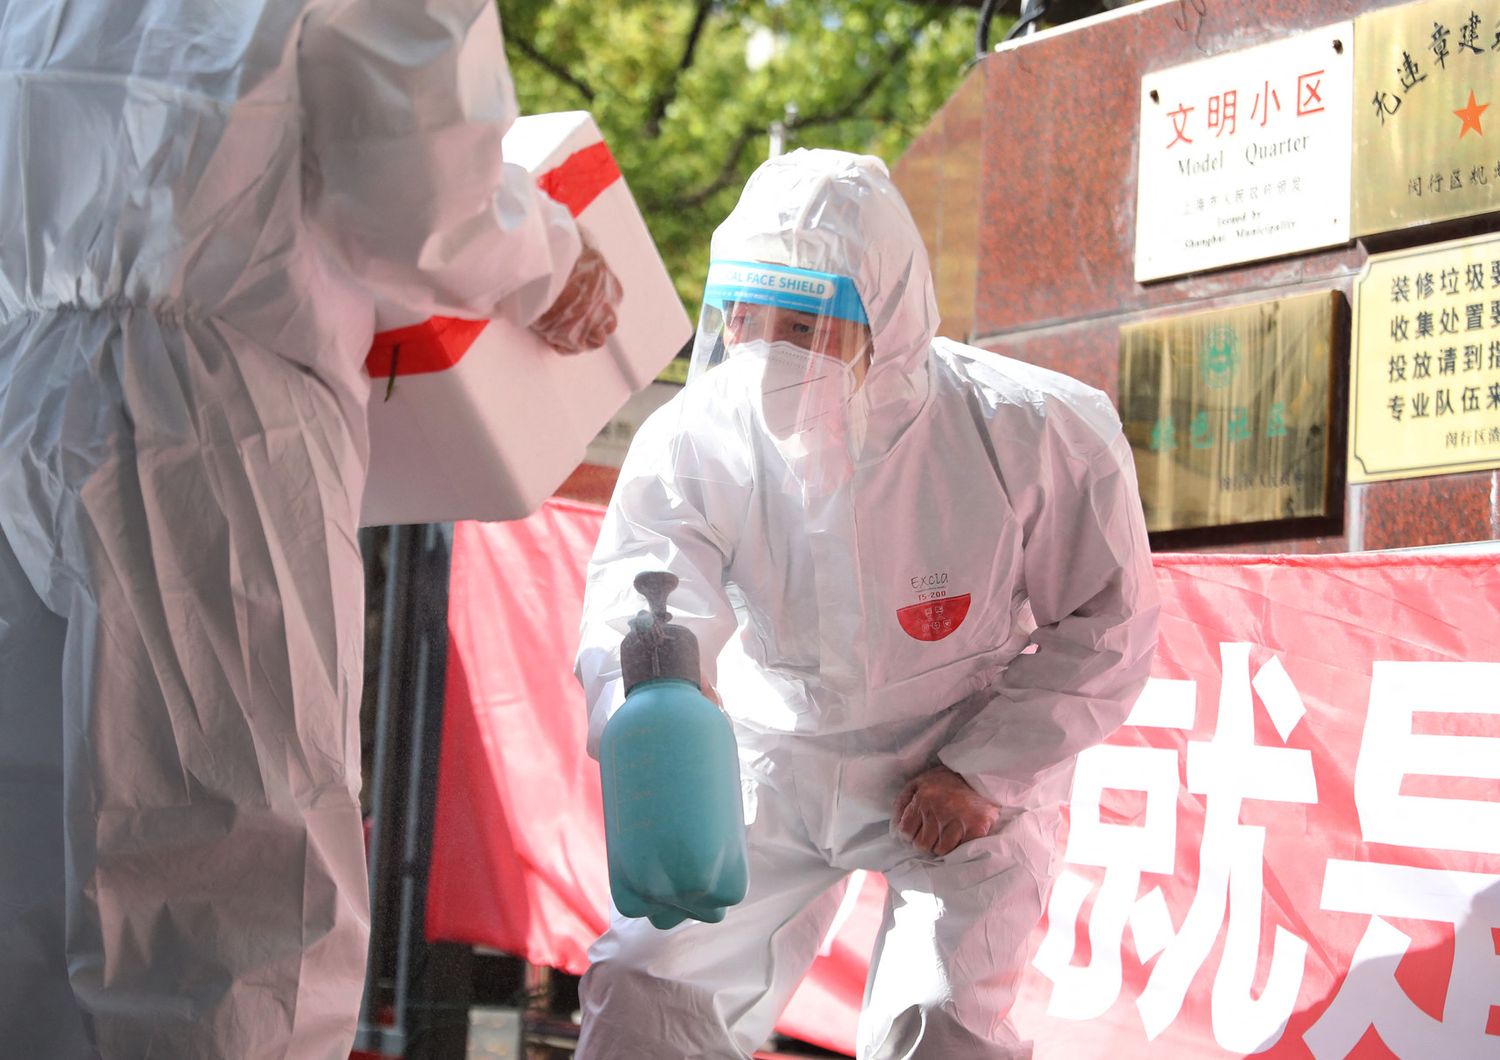 La disinfezione di pacchi a Shanghai in lockdown